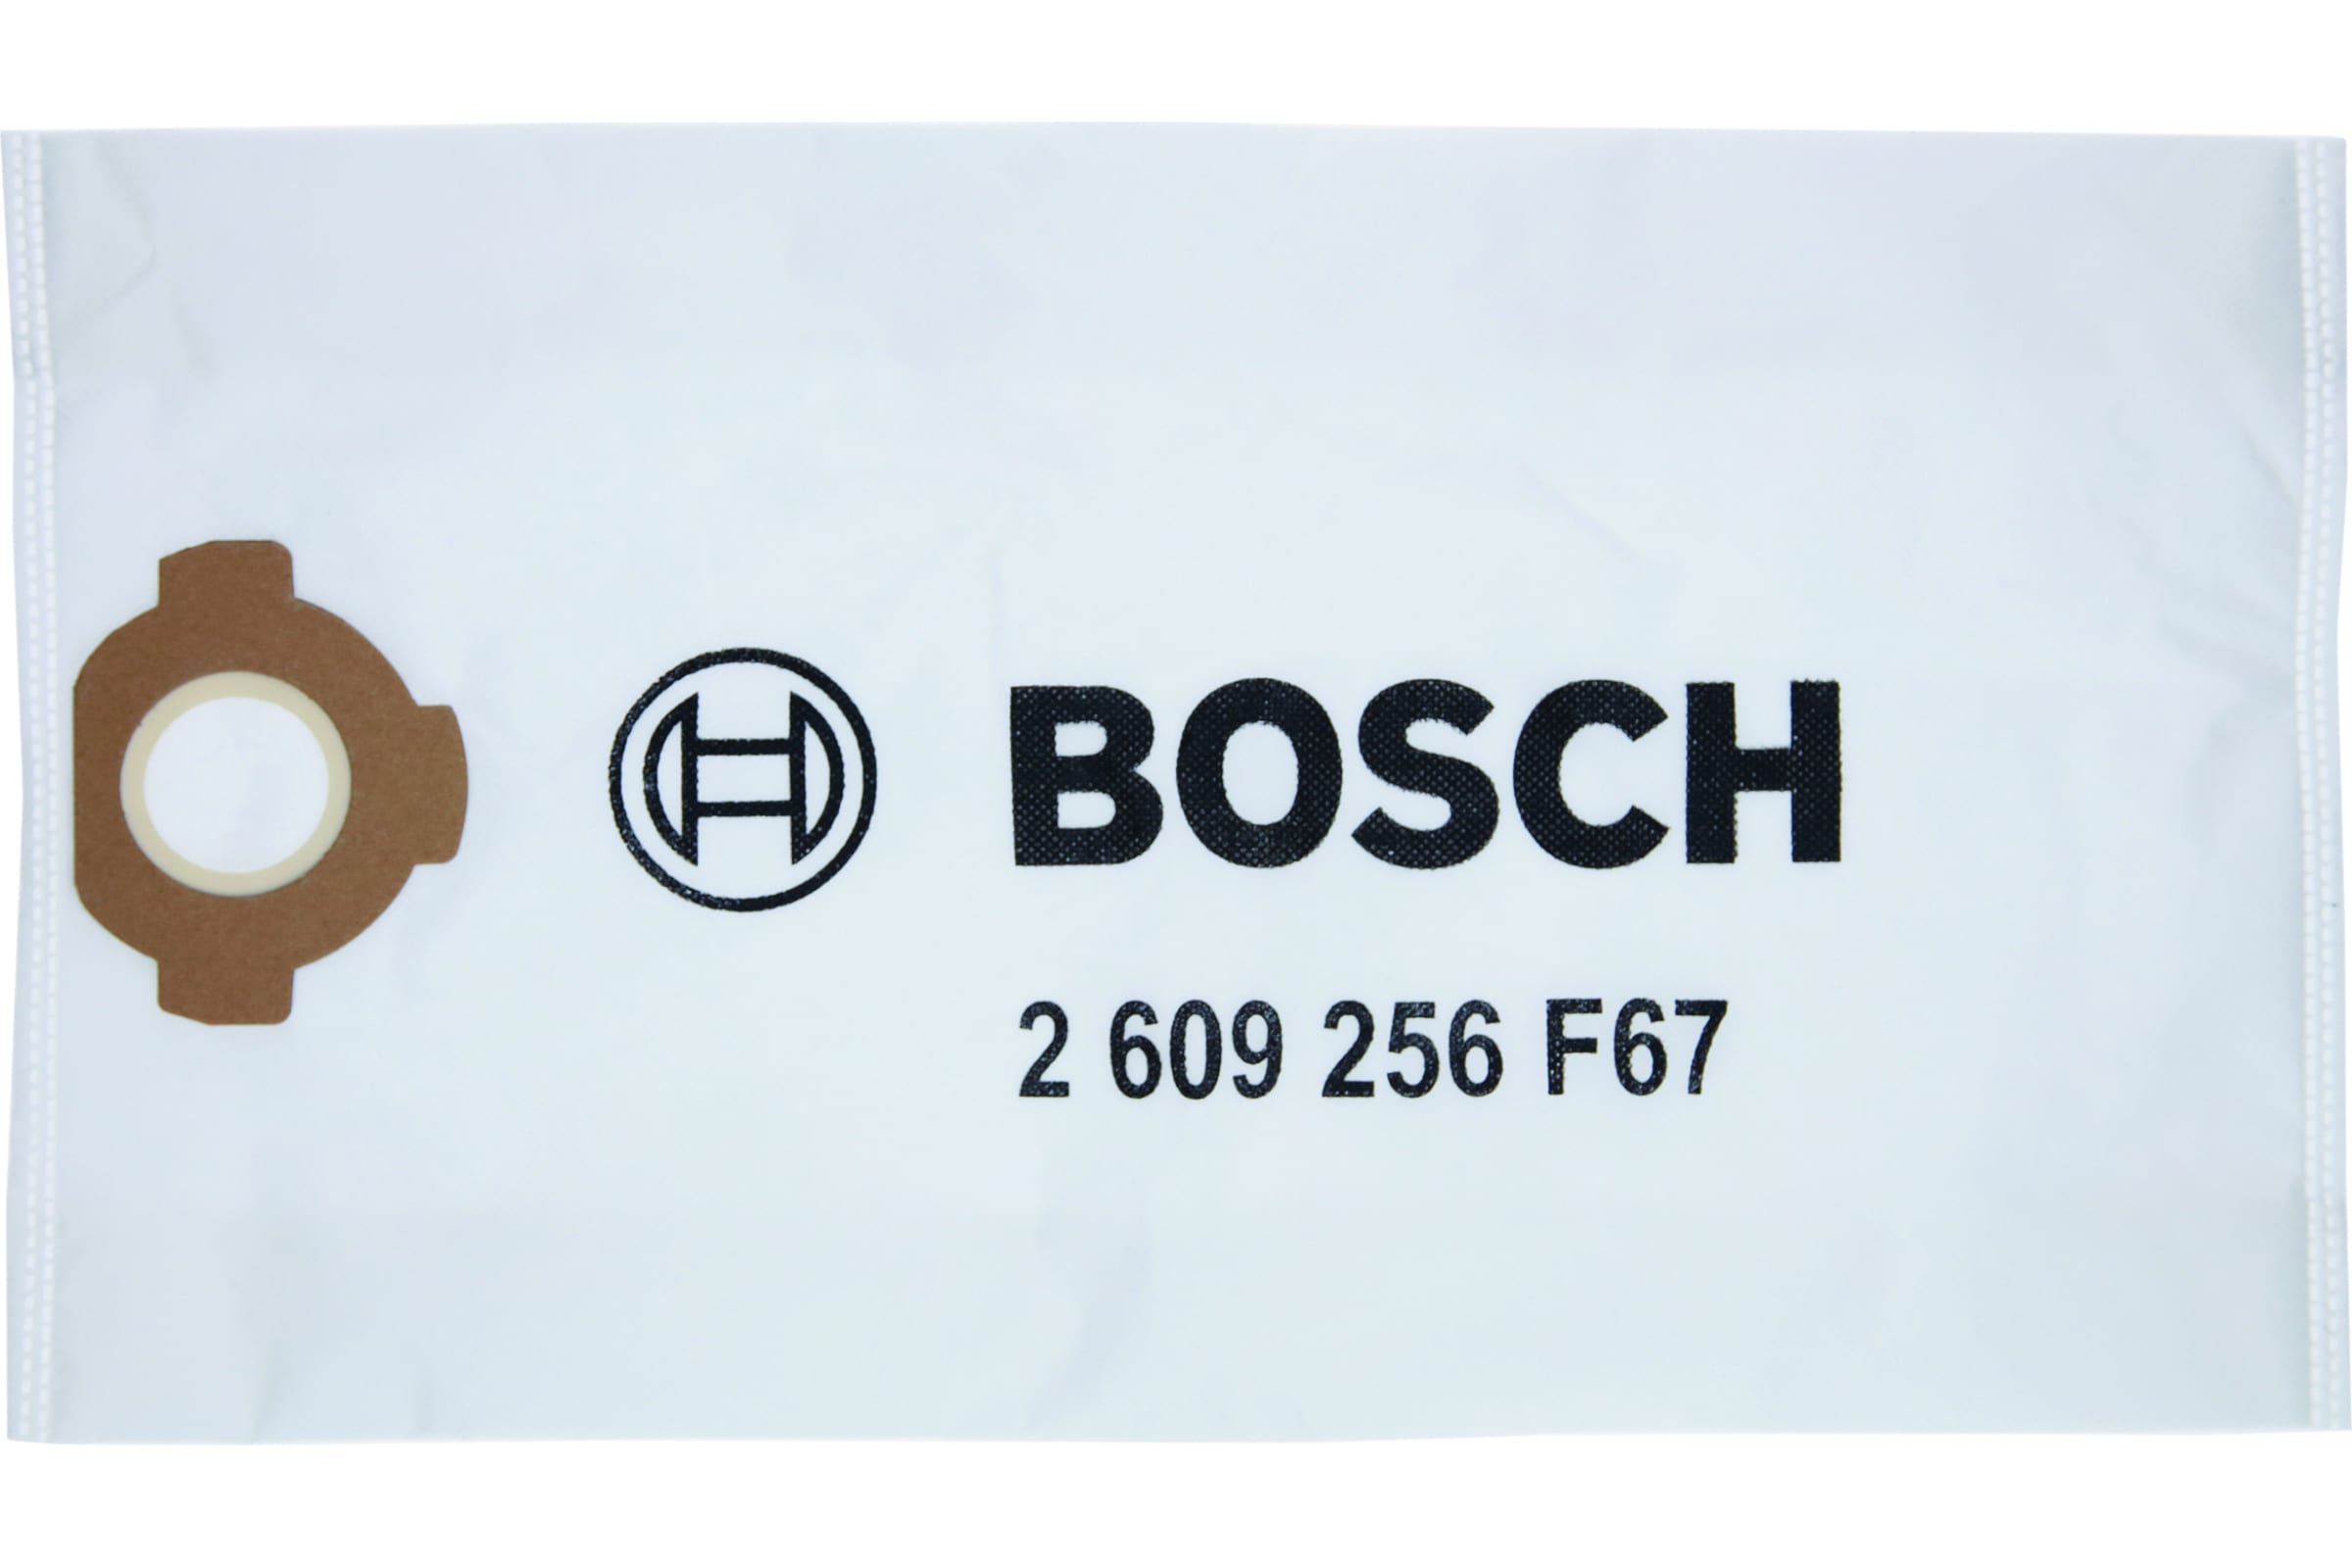 фото Bosch мешок для пыли флис 4 шт. 2609256f67